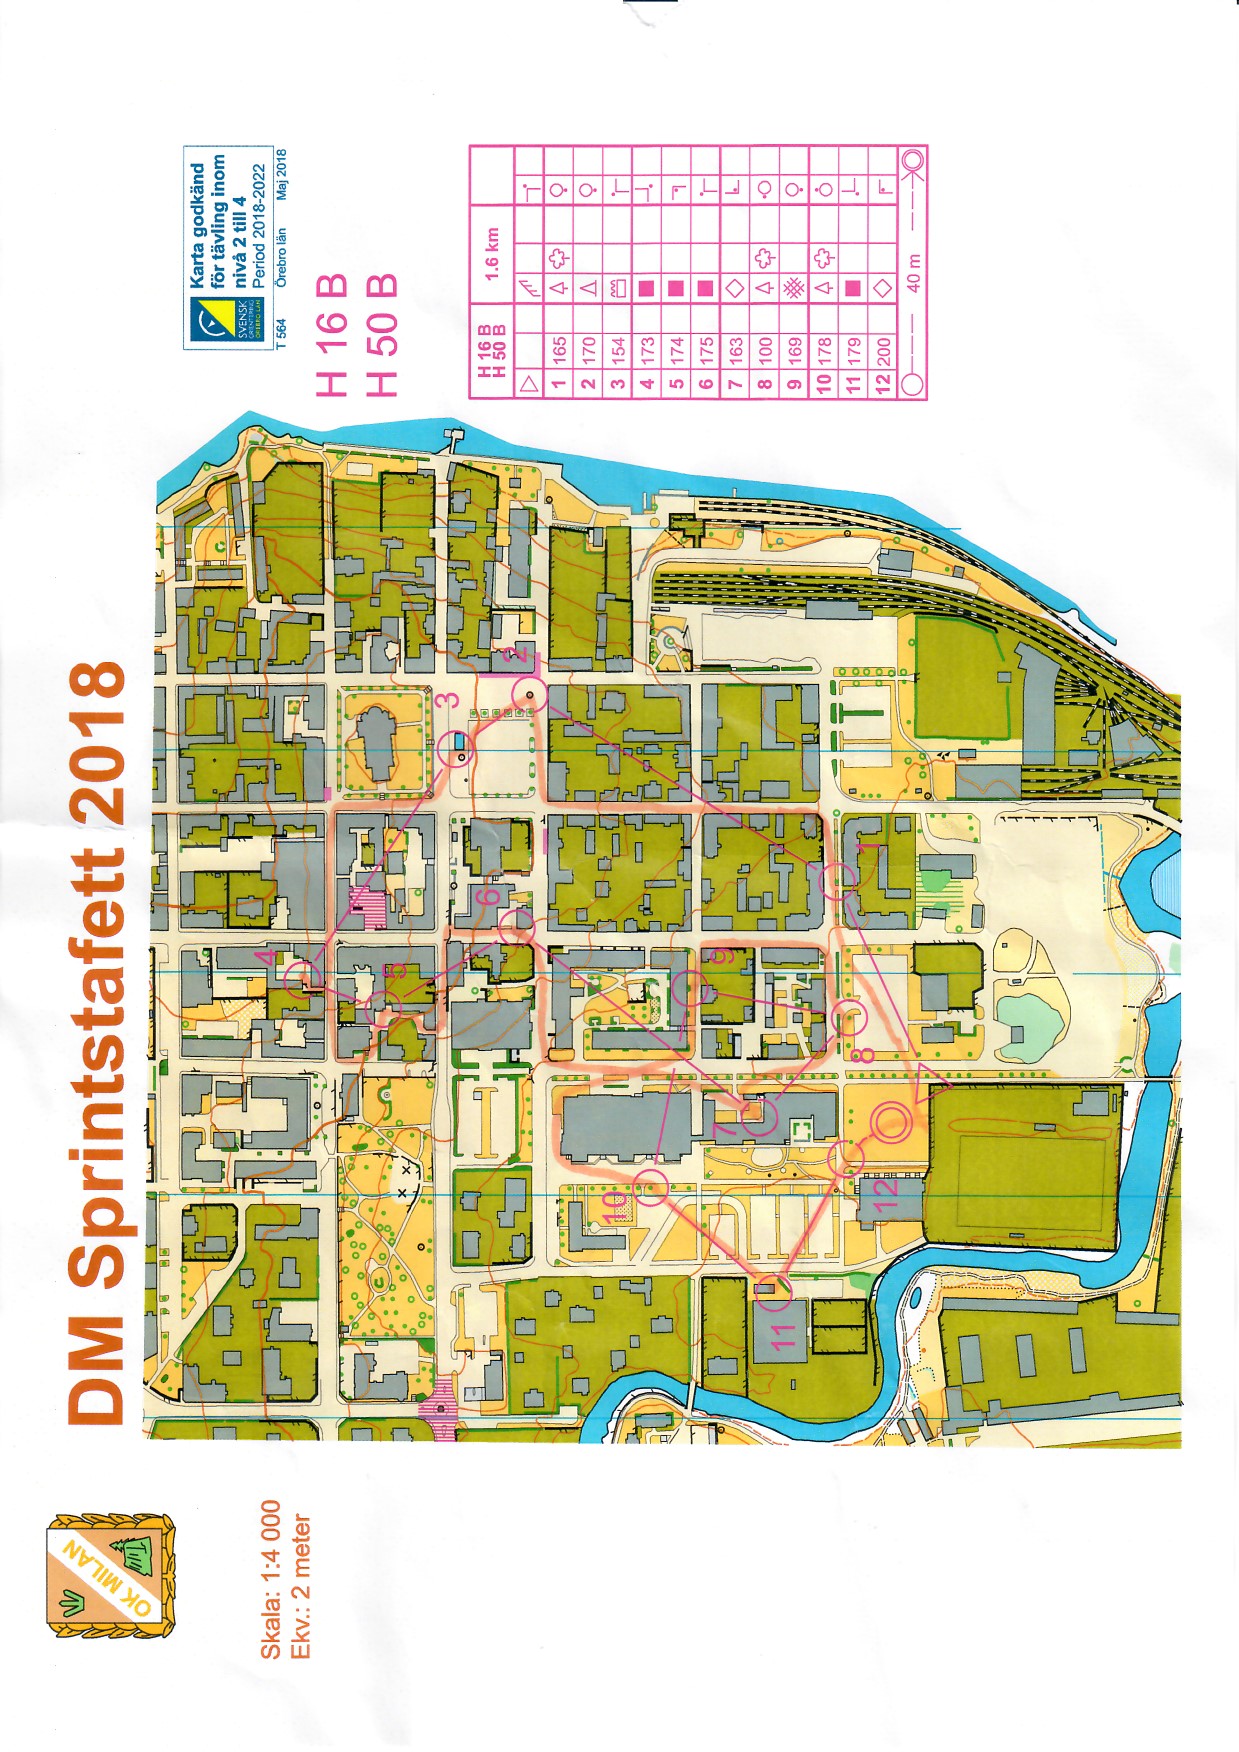 DM Sprintstafett, Örebro (2018-06-10)